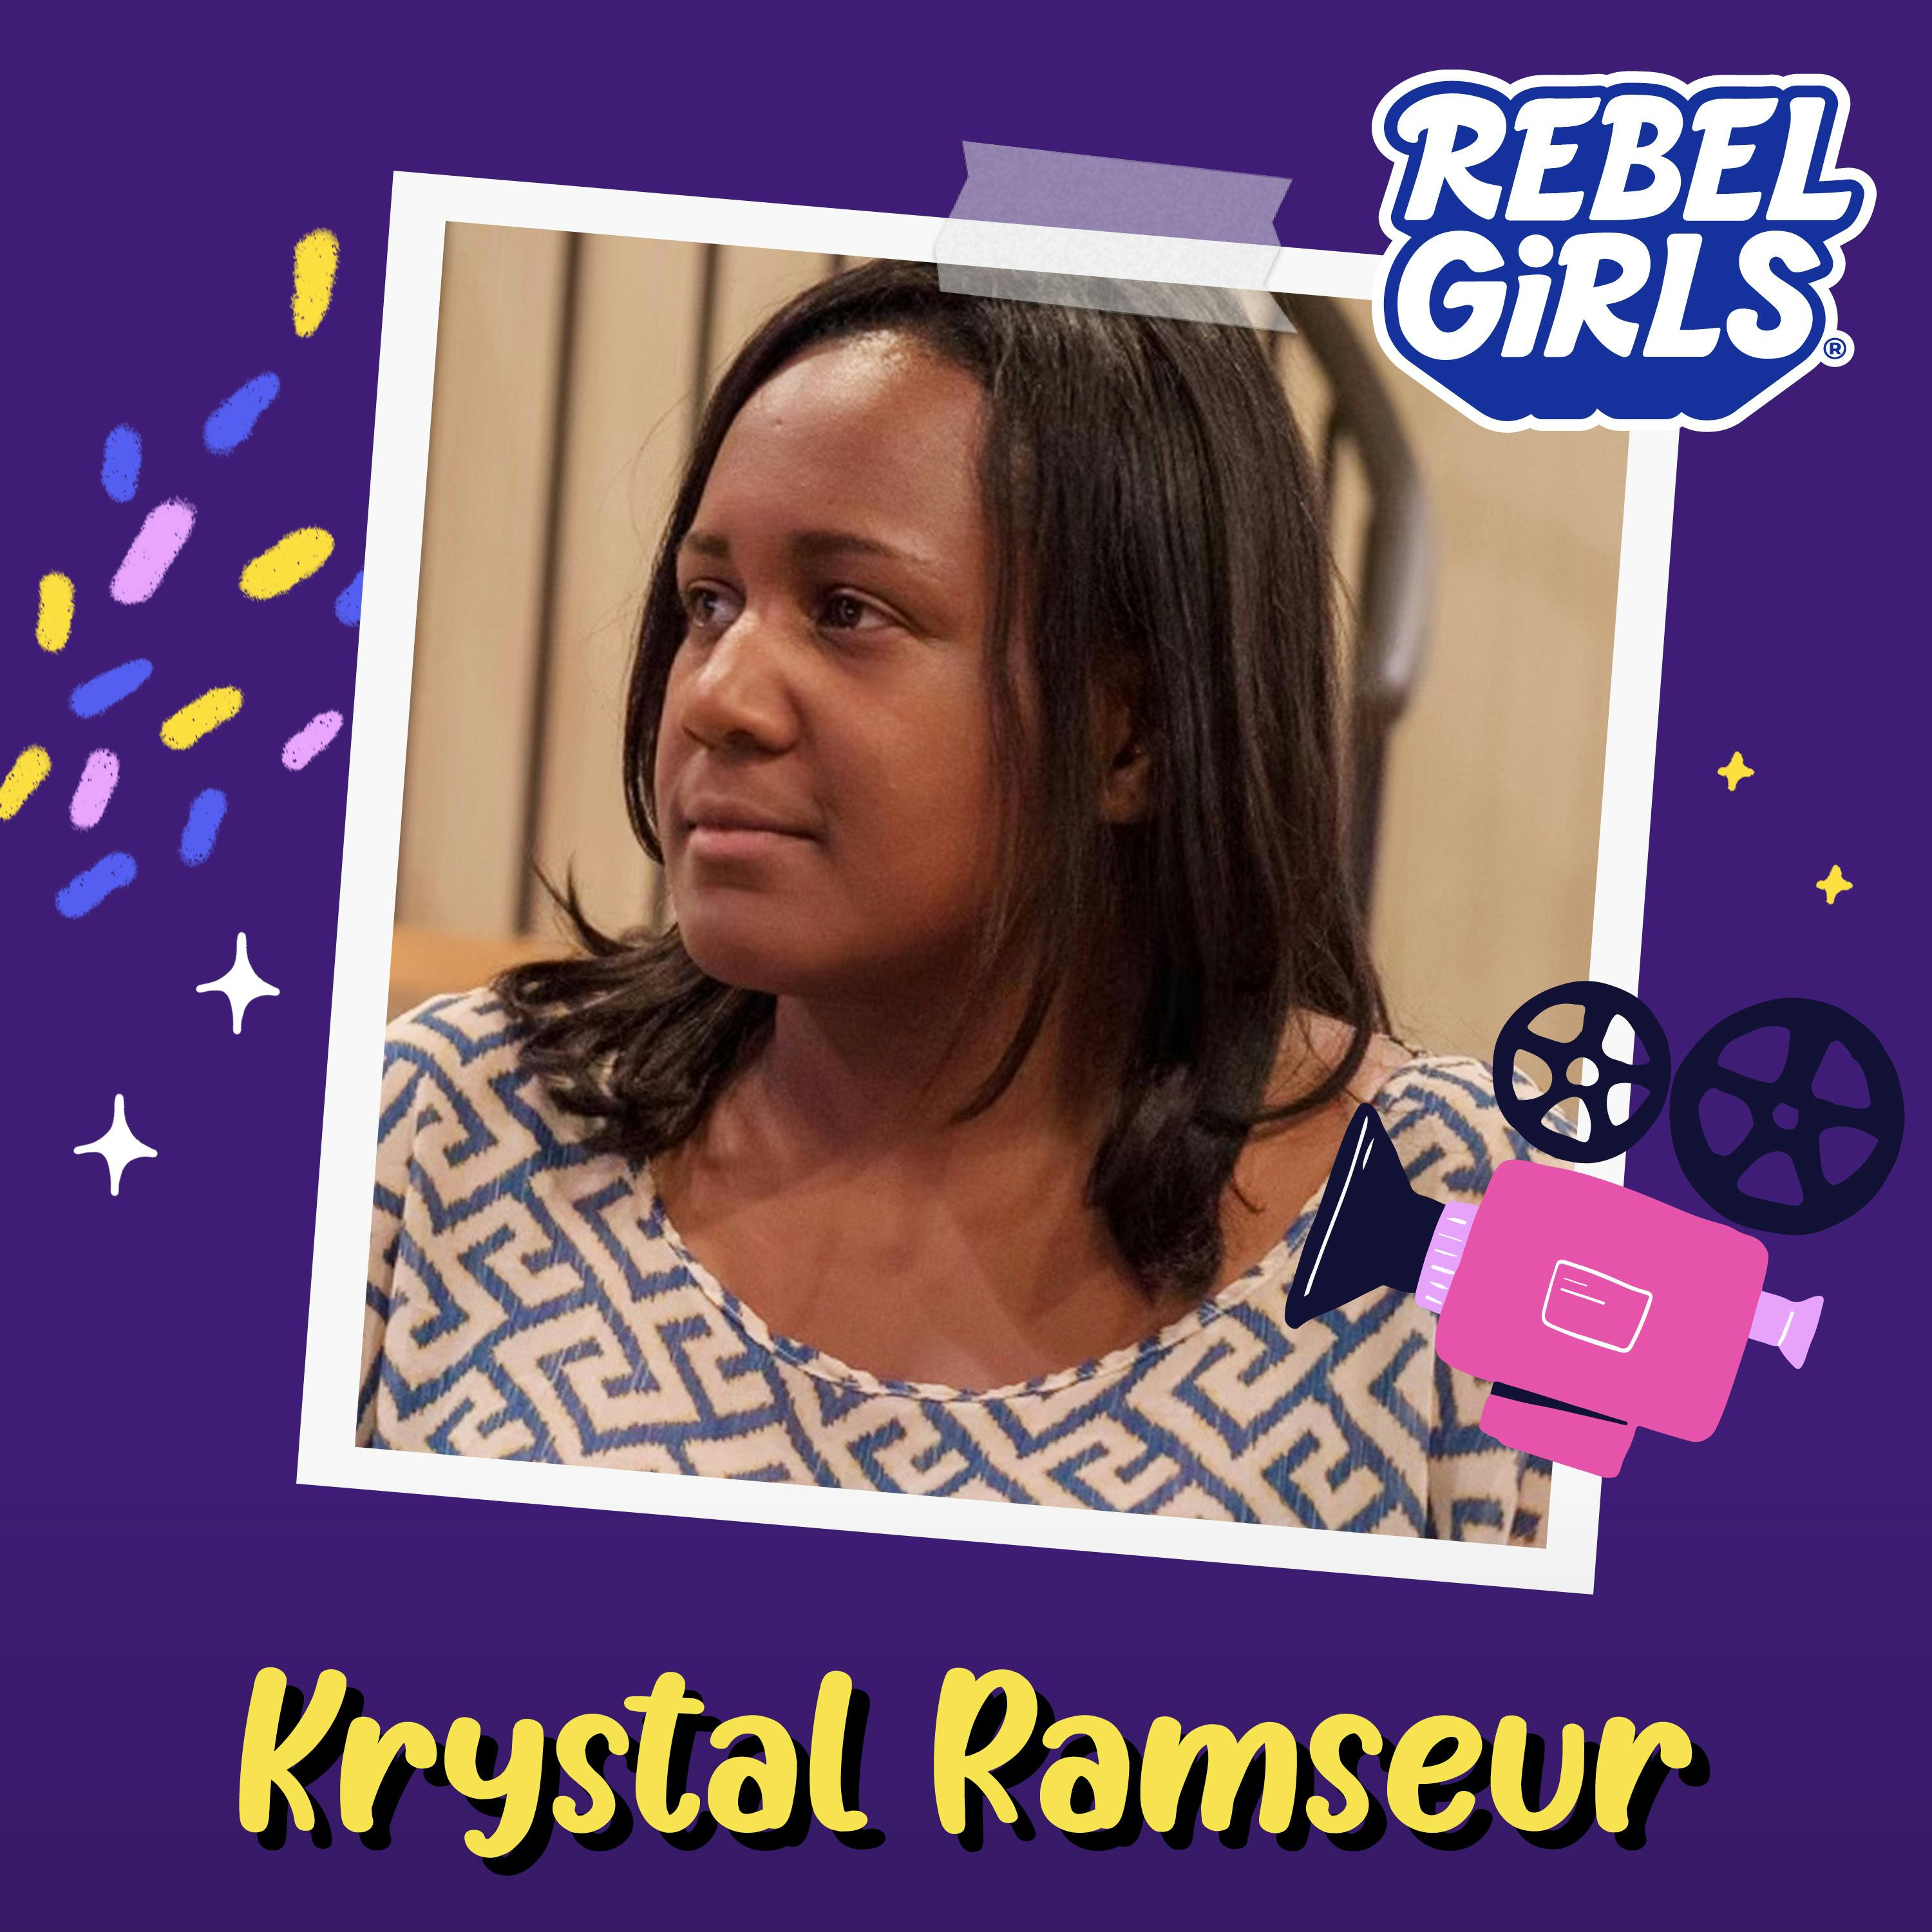 Get to Know Krystal Ramseur